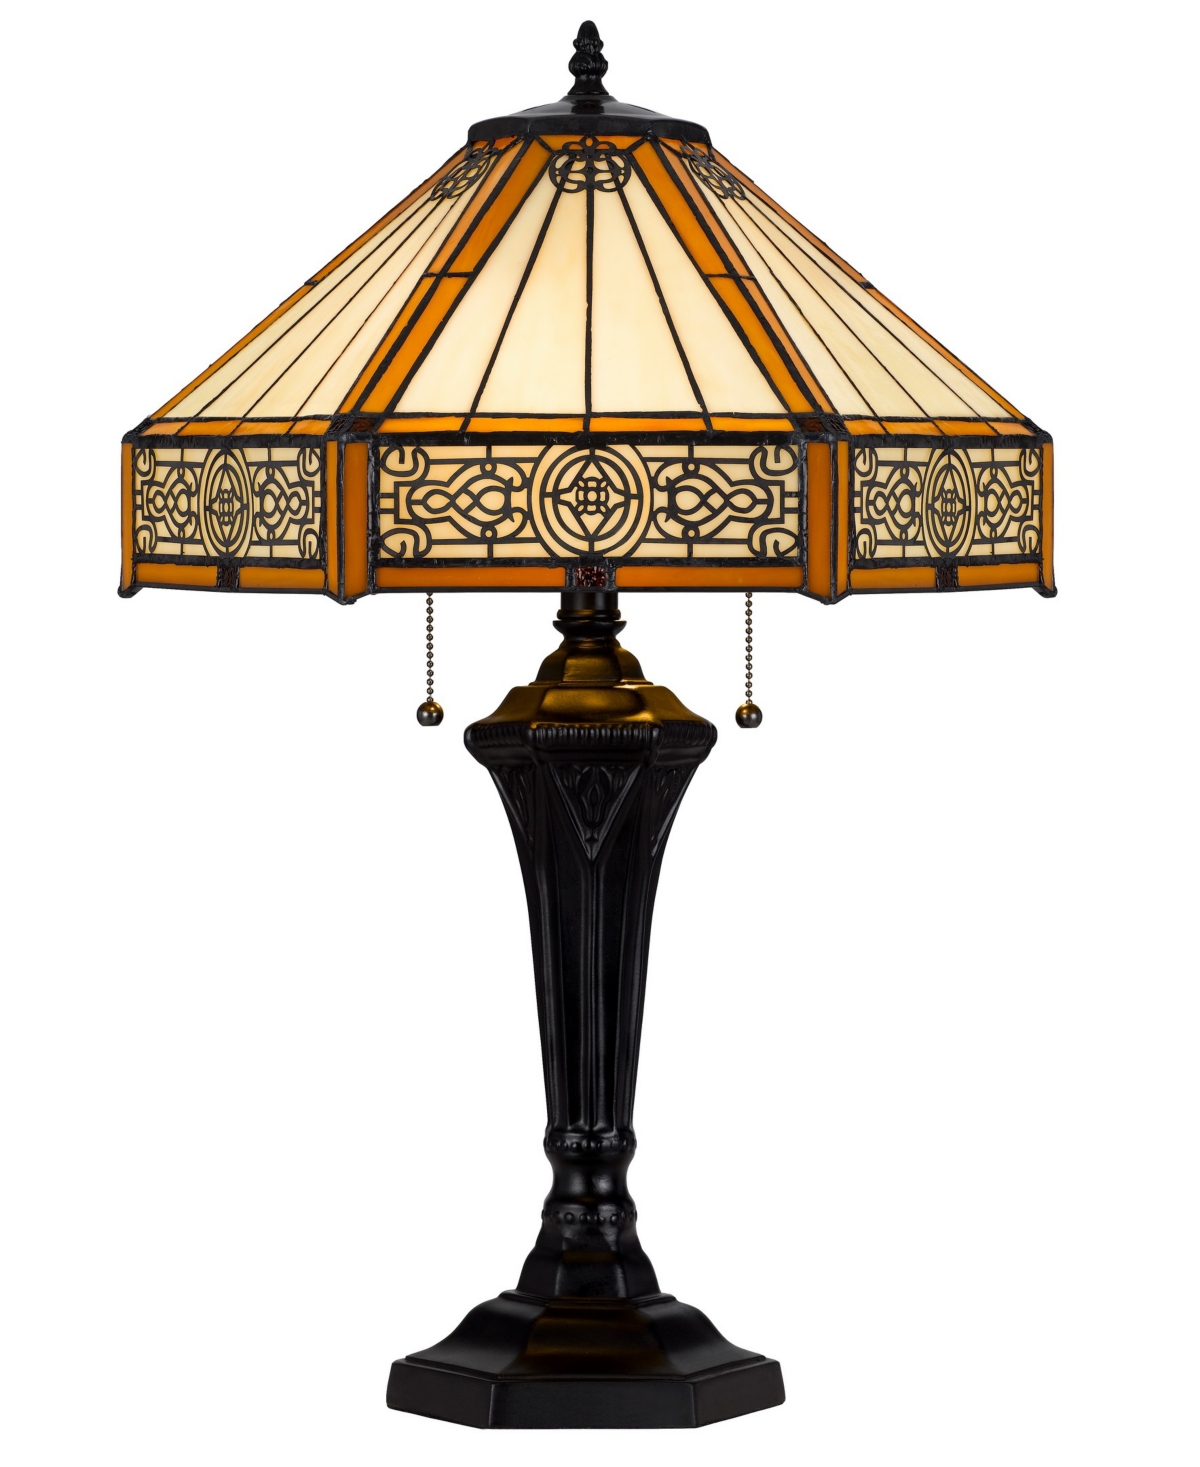 Cal Lighting 24" Height Metal And Resin Table Lamp In Dark Bronze